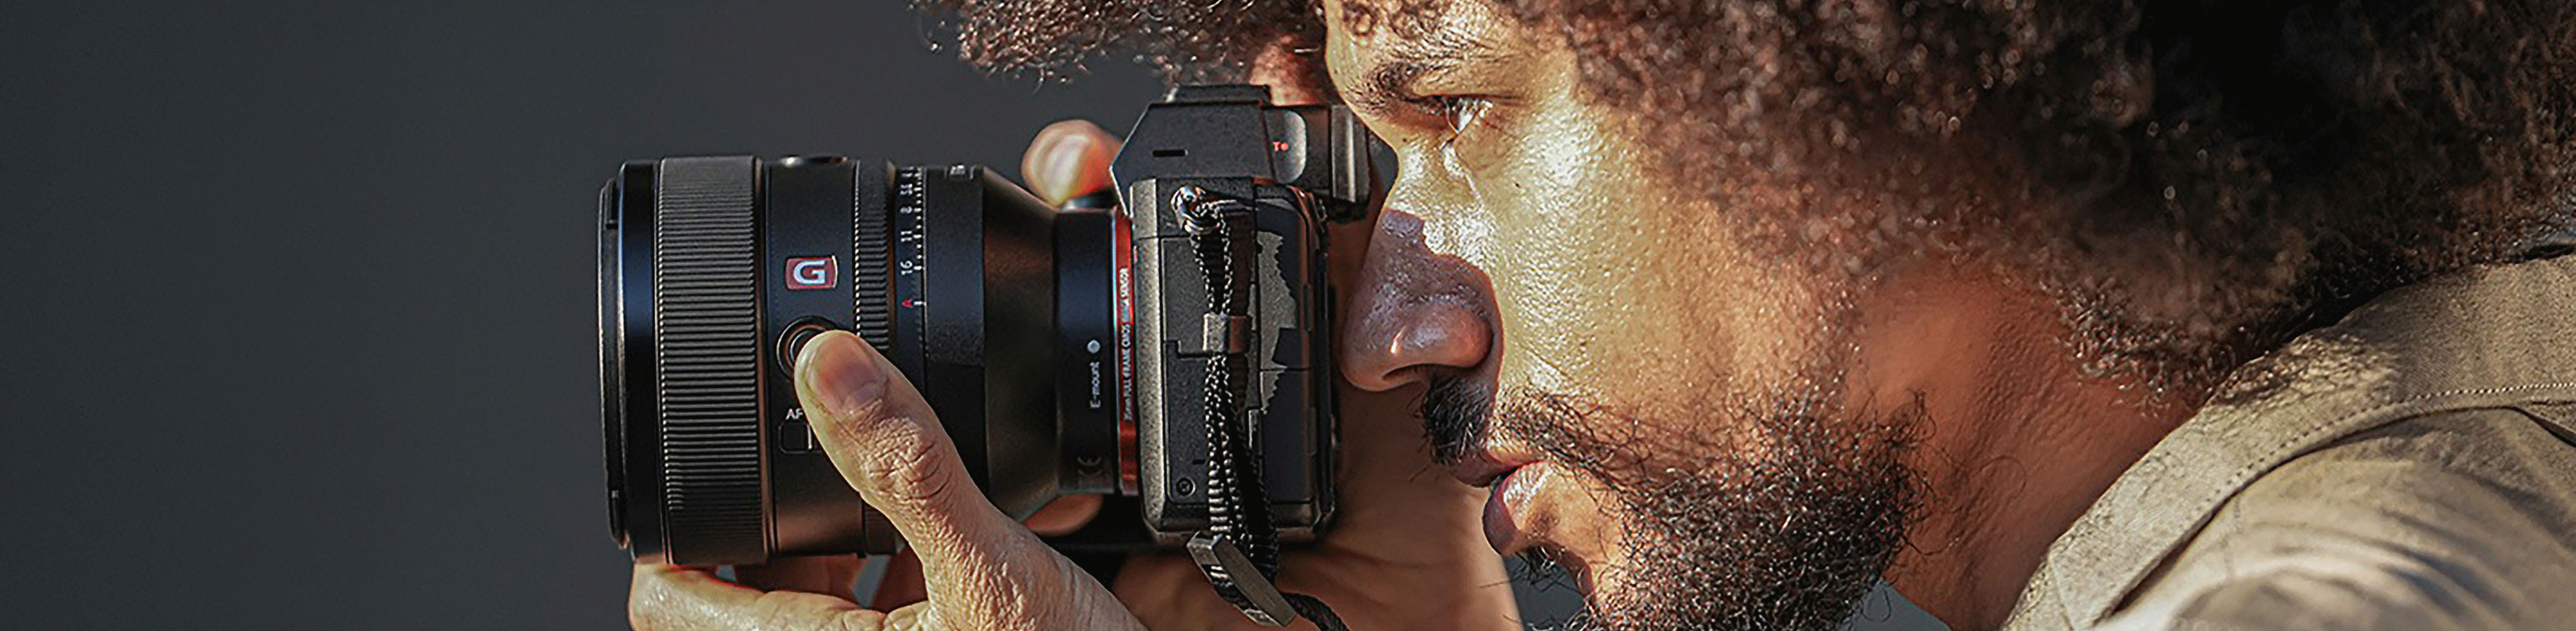 Afbeelding van een persoon die een camera vasthoudt waarop de FE 50 mm F1.2 GM-lens is bevestigd